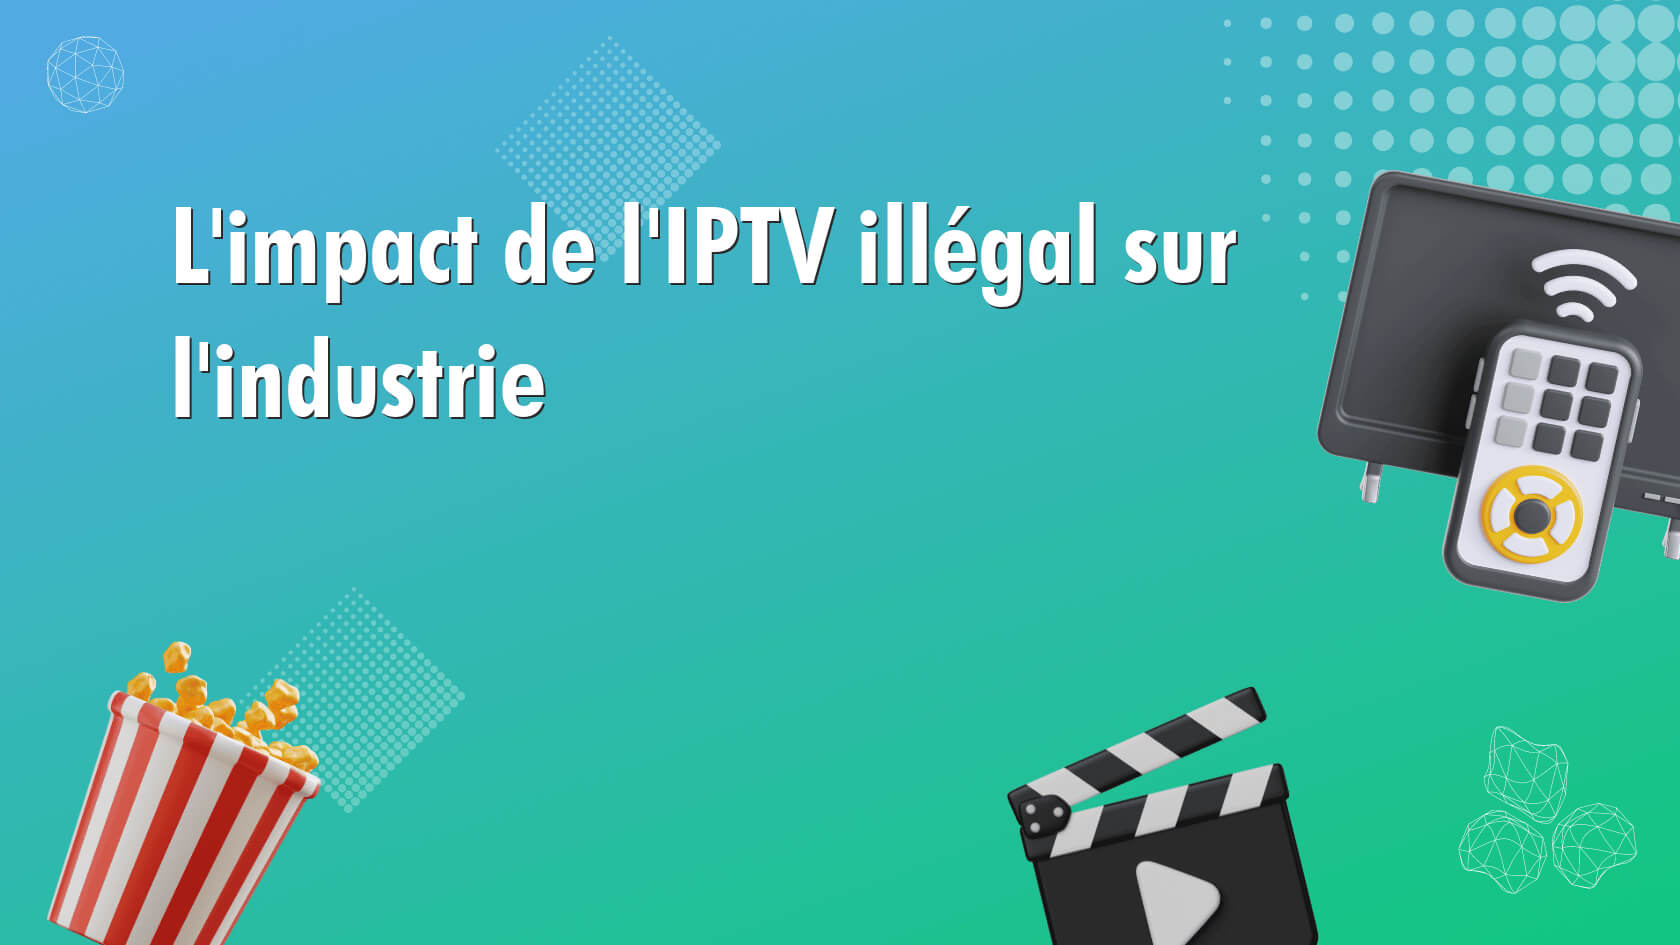 L’impact de l’IPTV illégal sur l’industrie